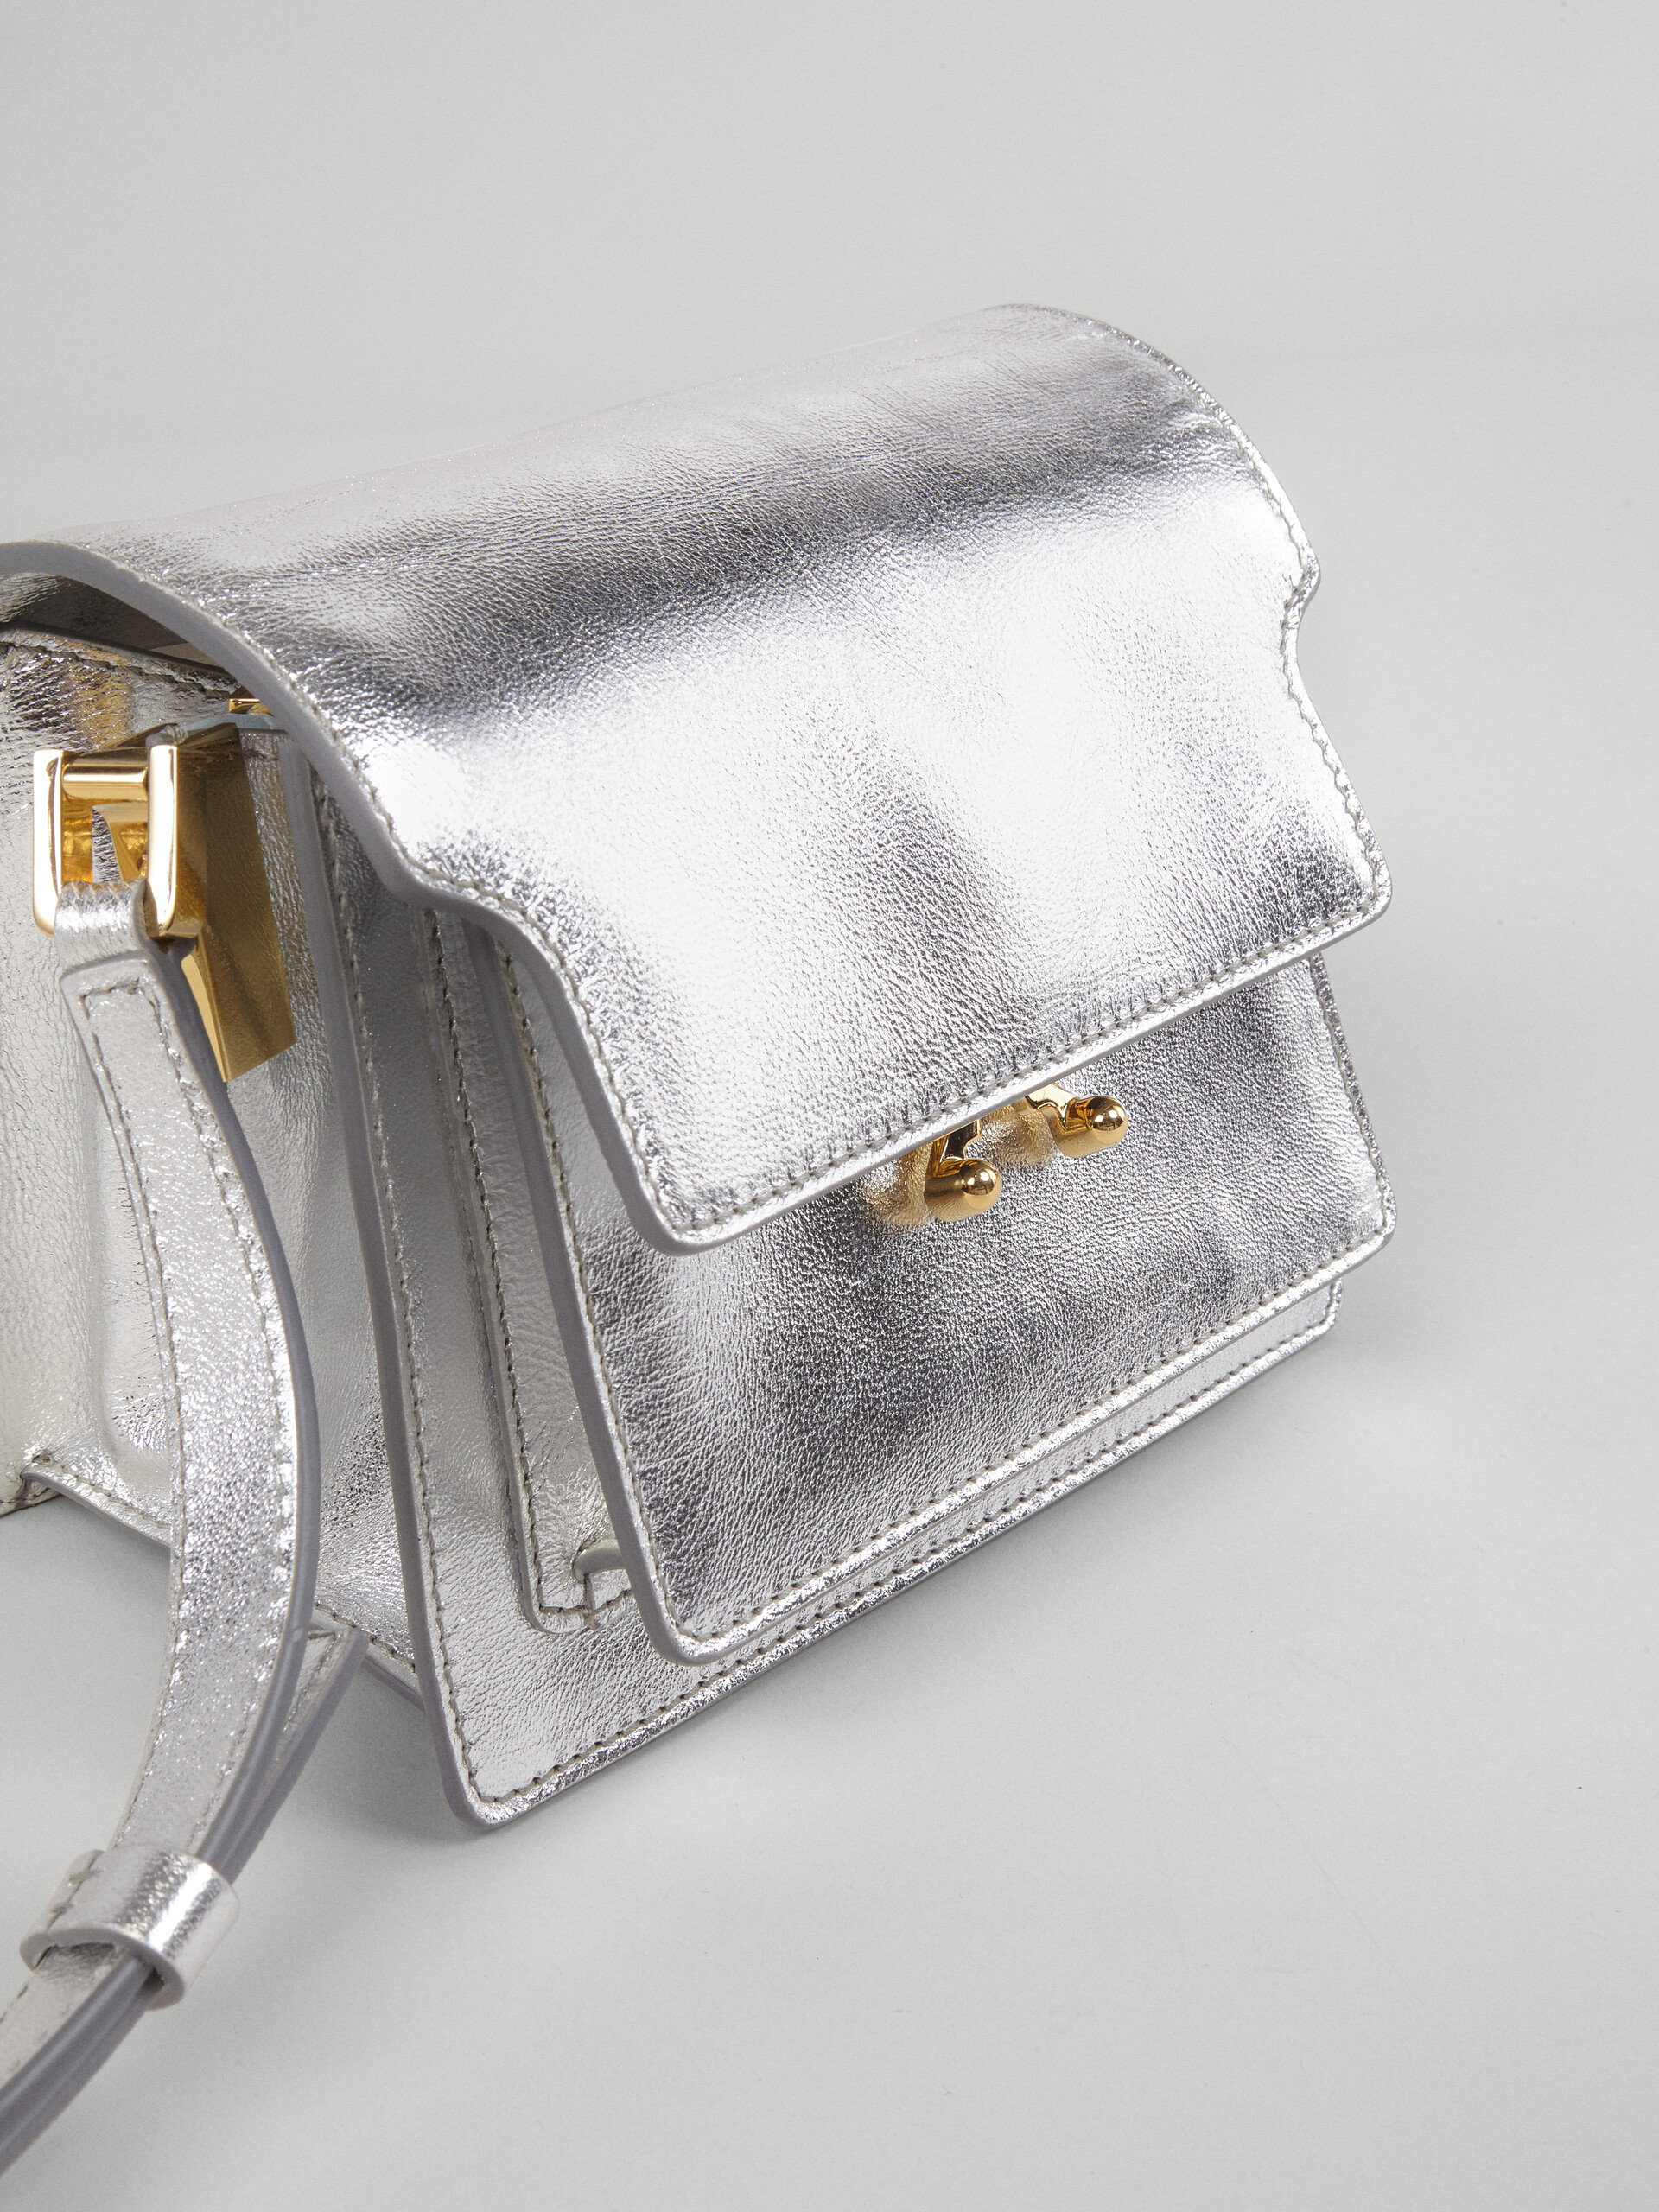 TRUNK SOFT bag in pelle metallizzata argento - Borse a spalla - Image 2